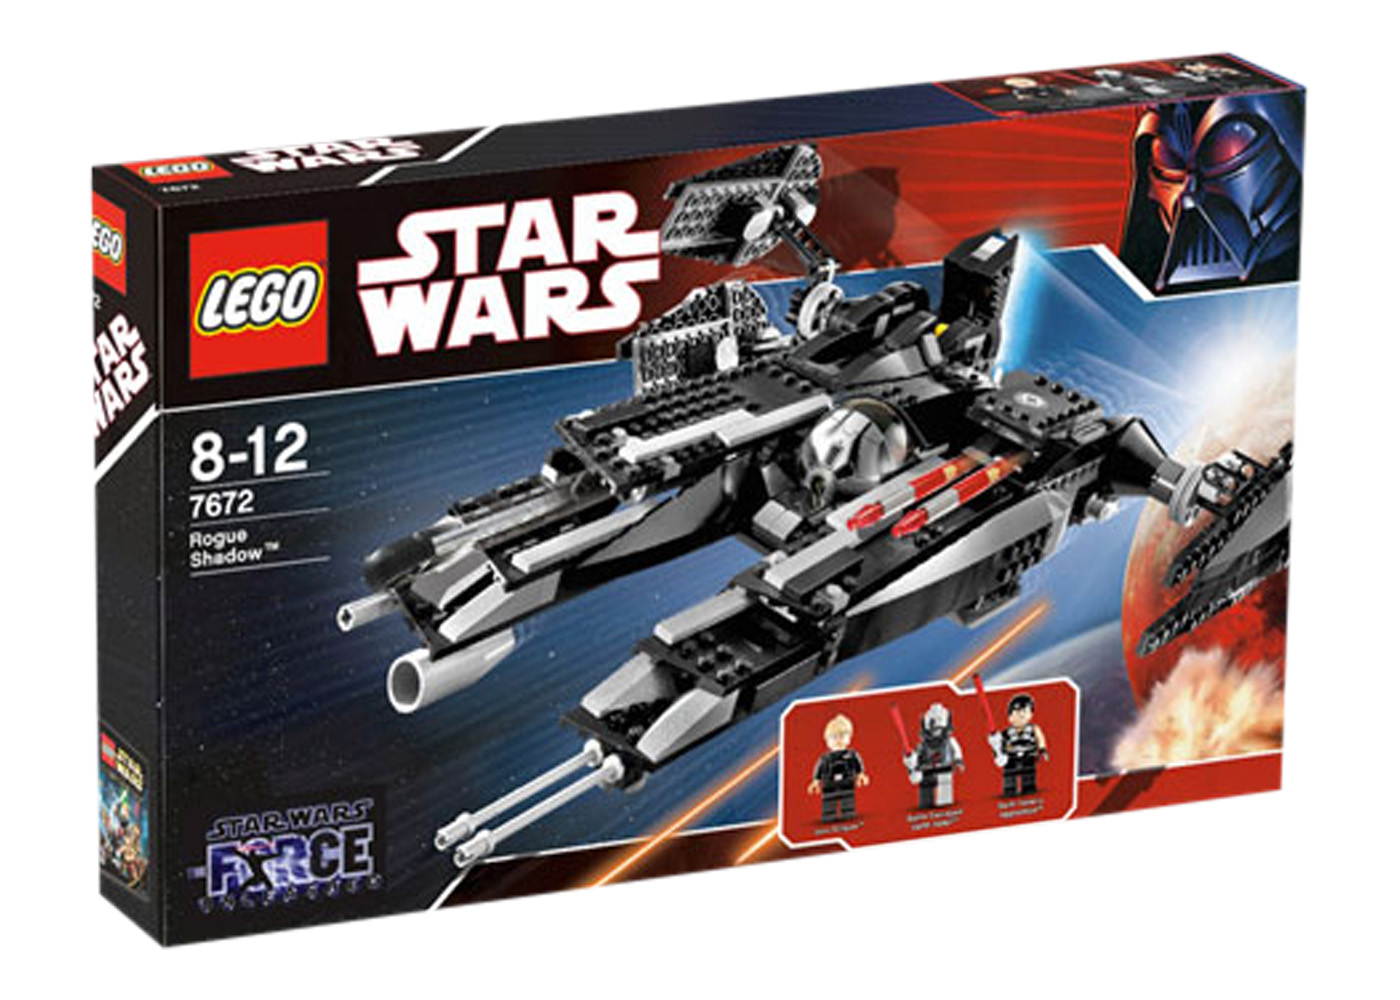 LEGO Star Wars Rogue Shadow Set 7672 - TW